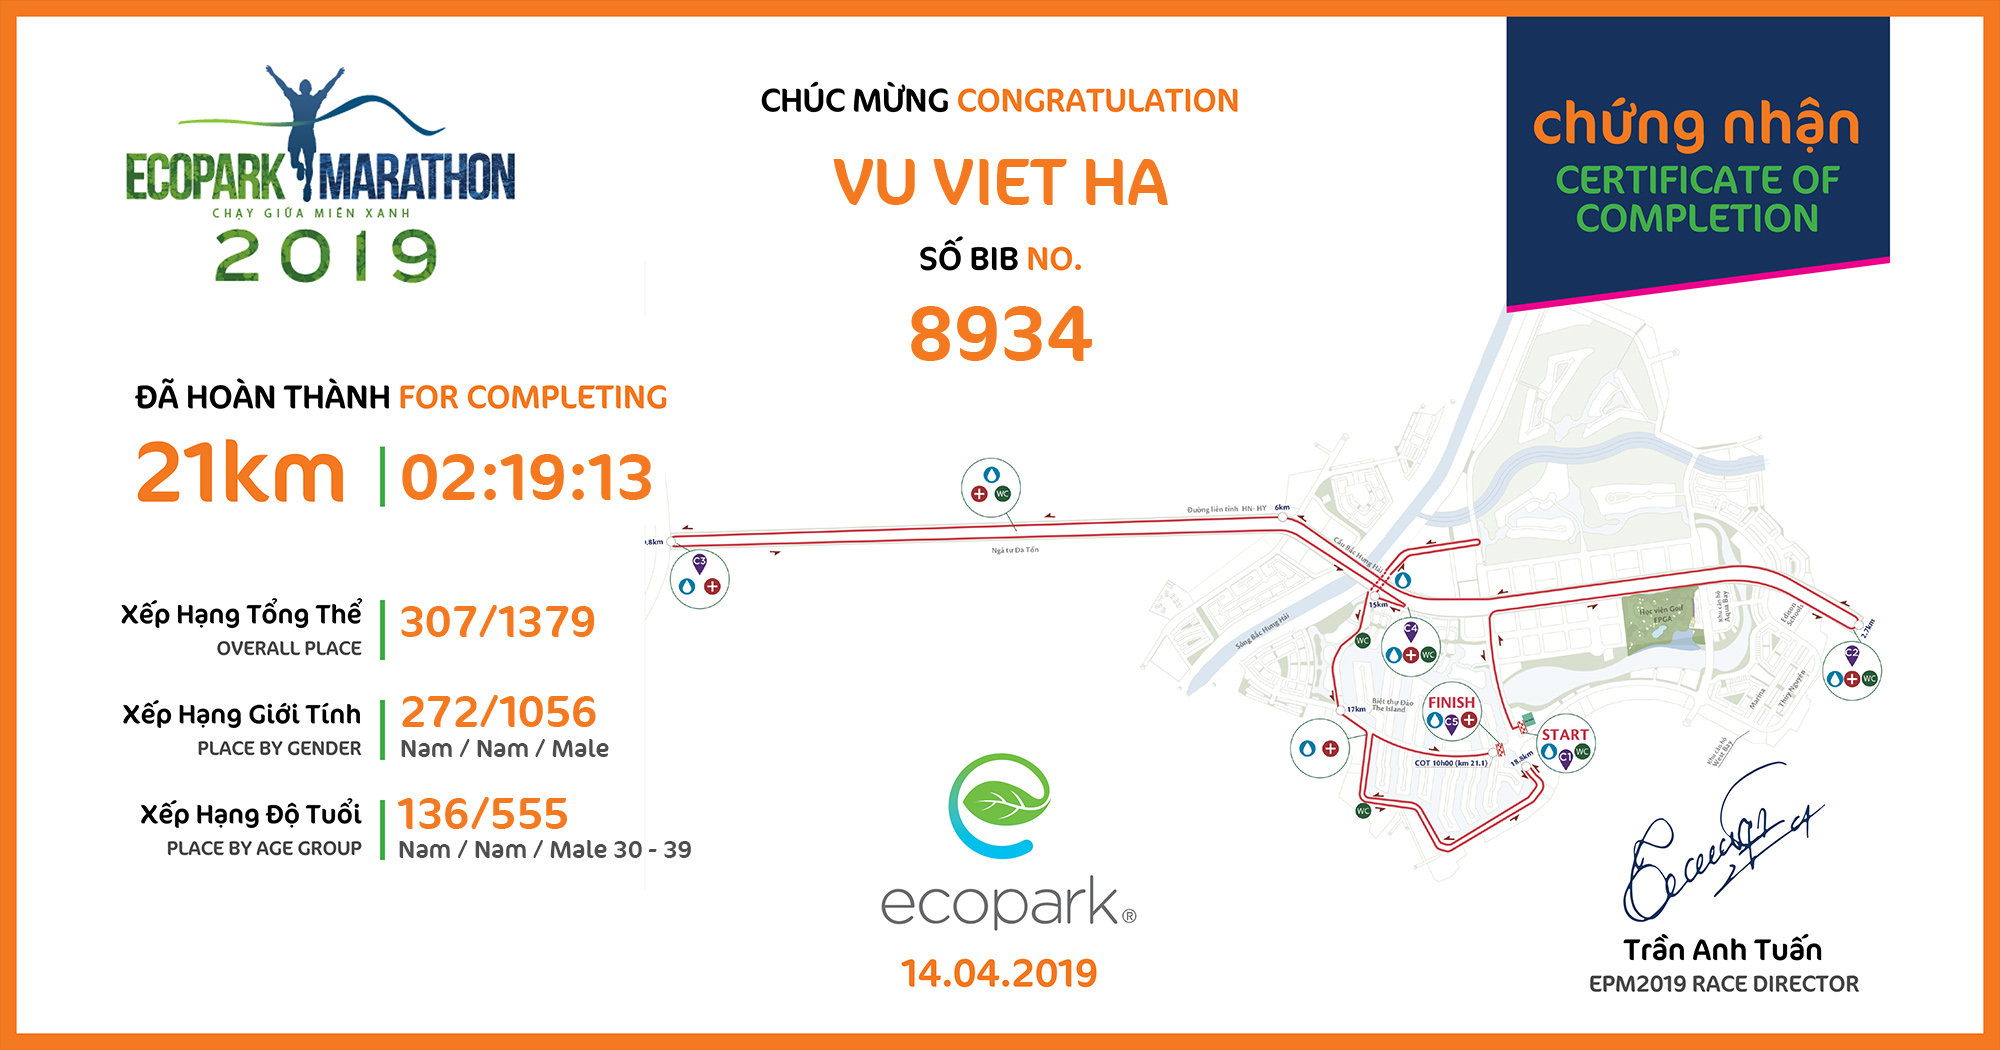 8934 - Vu Viet Ha